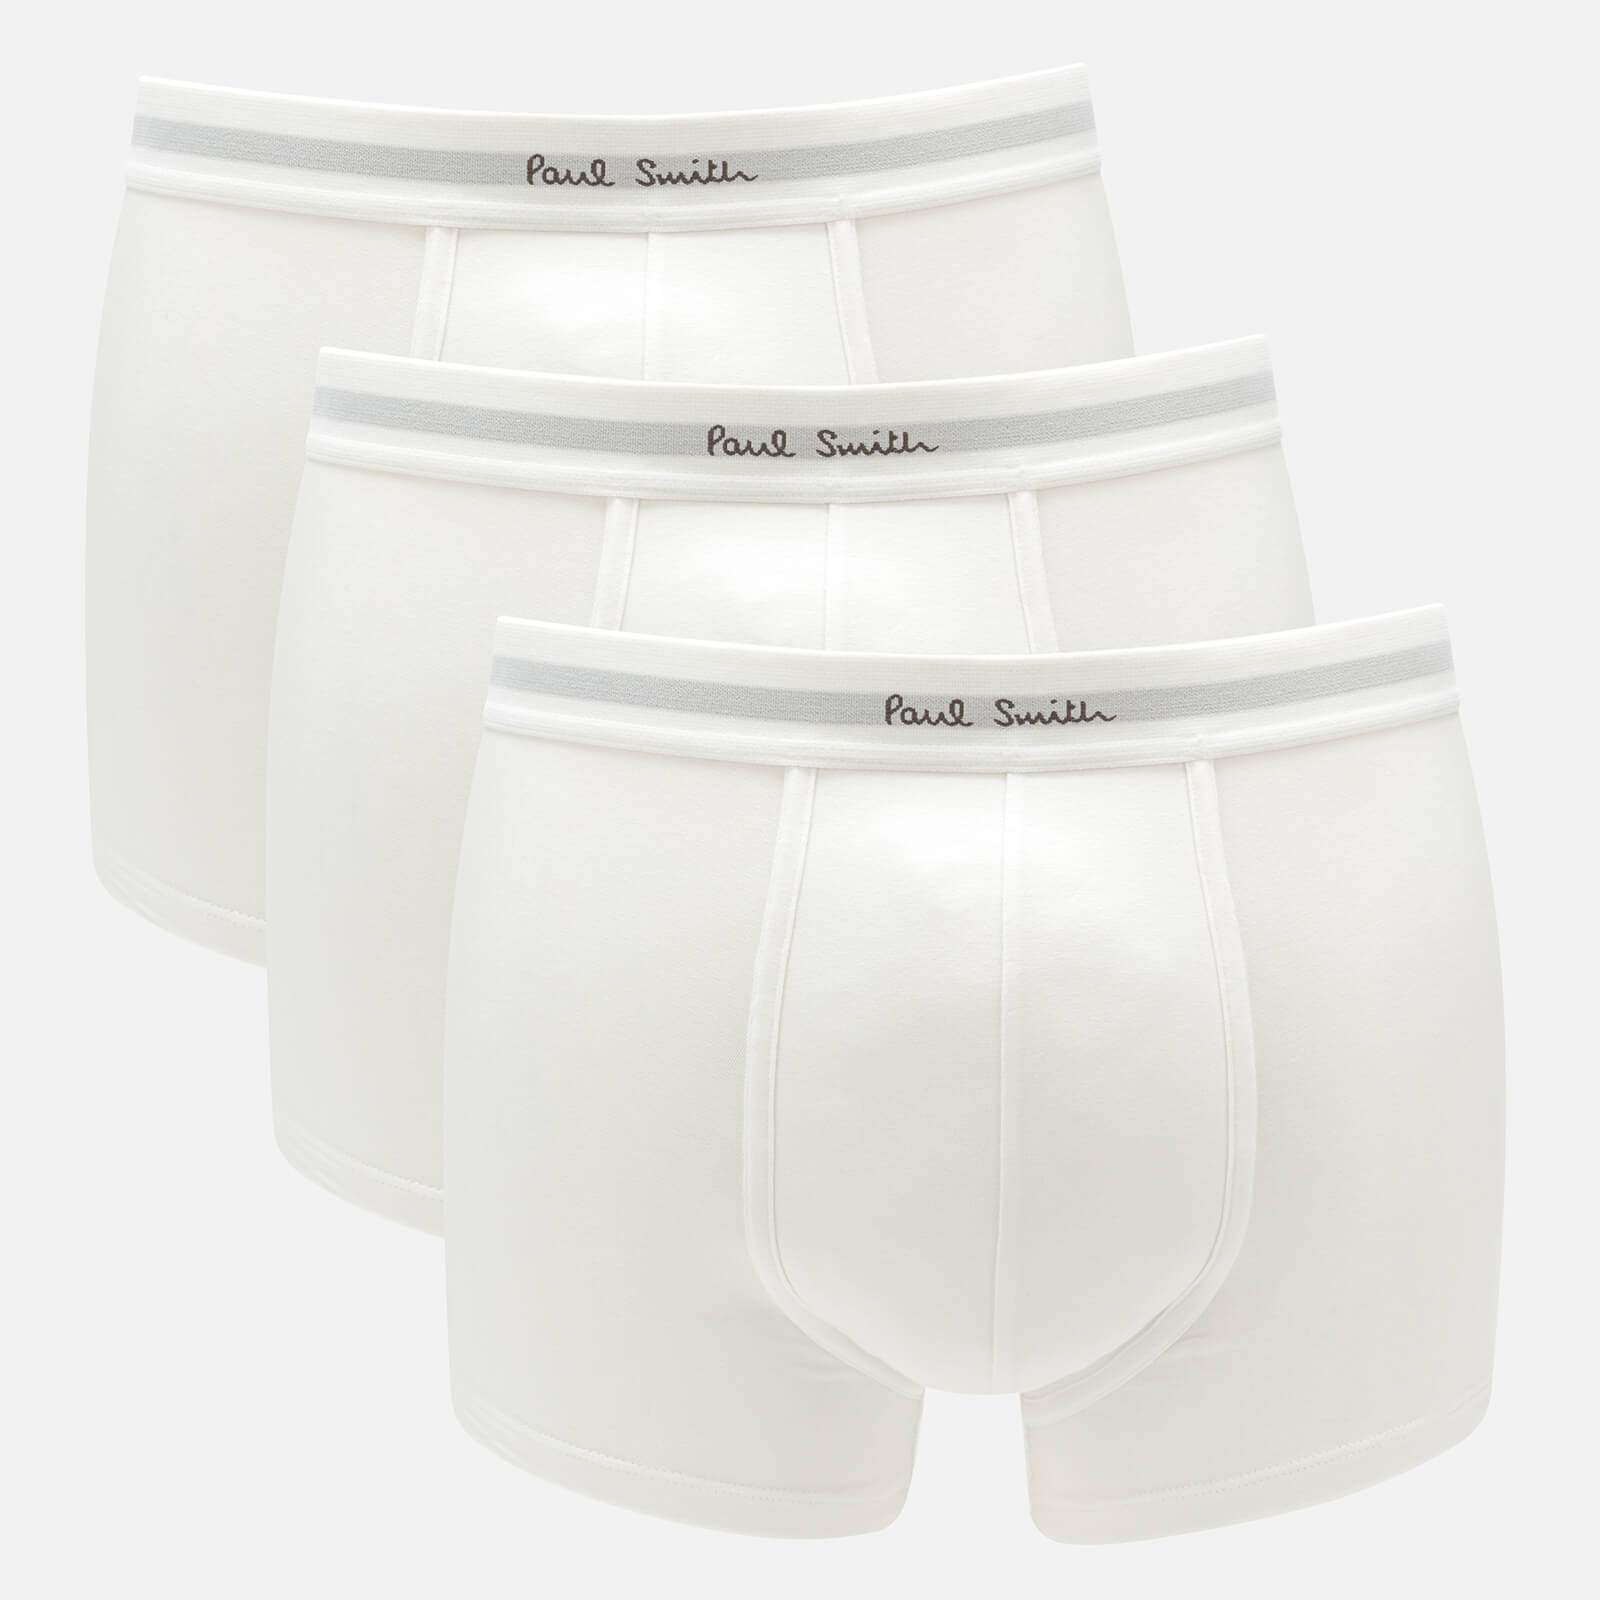 PS Paul Smith Men's 3-Pack Trunks - White - XL